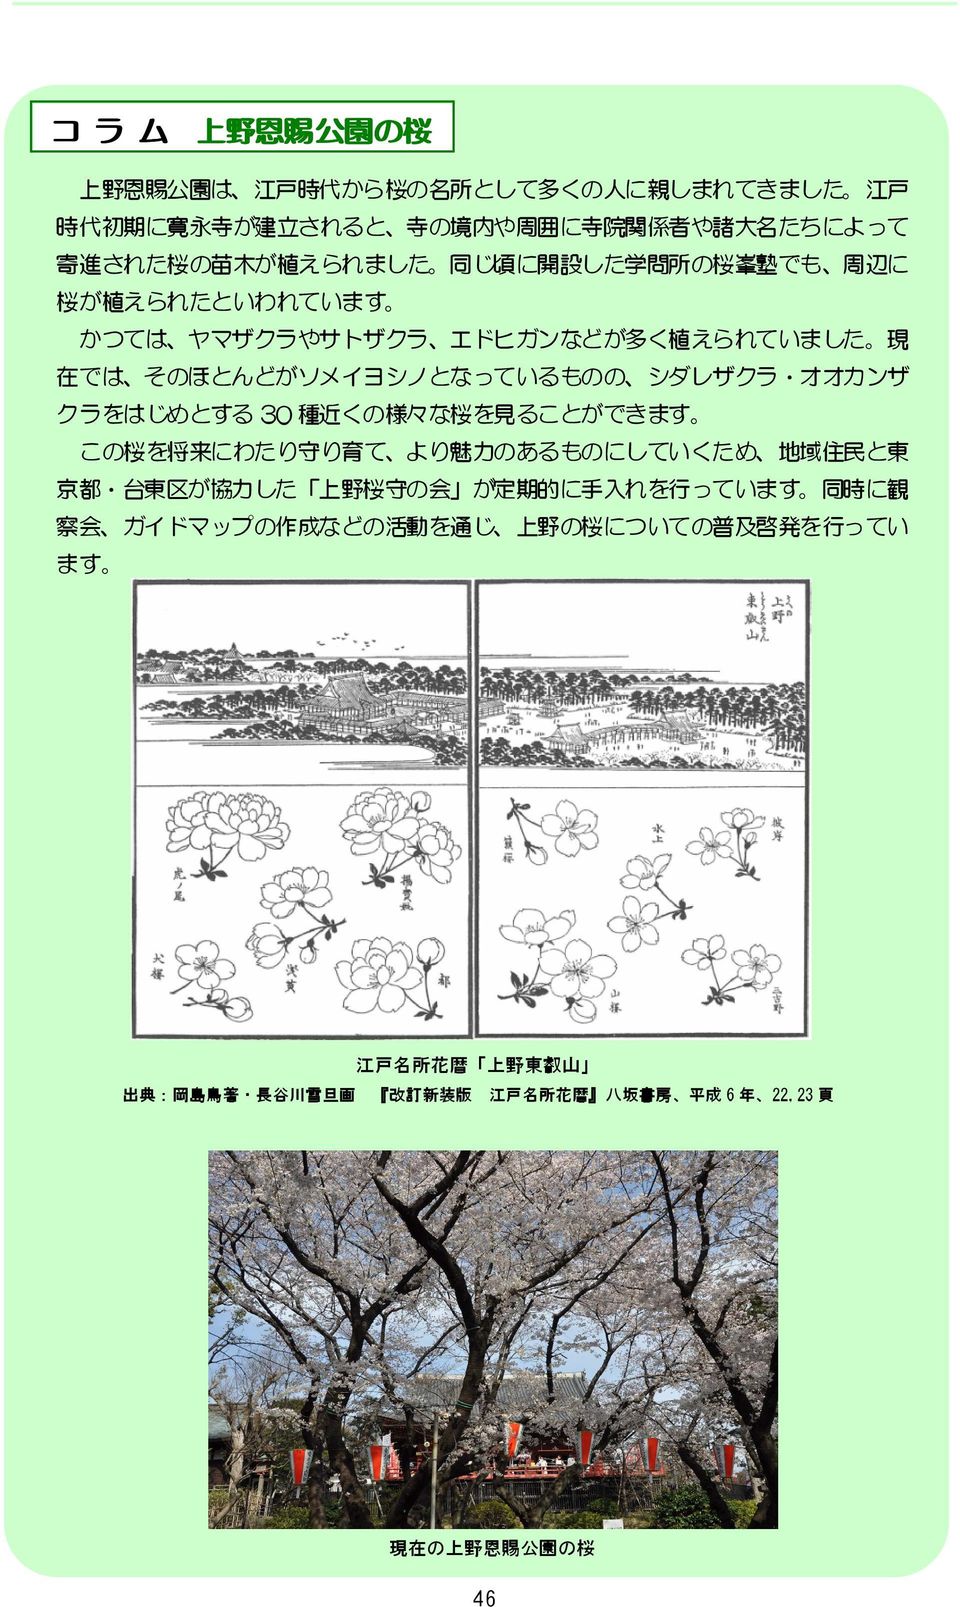 30 種 近 くの 様 々な 桜 を 見 ることができます この 桜 を 将 来 にわたり 守 り 育 て より 魅 力 のあるものにしていくため 地 域 住 民 と 東 京 都 台 東 区 が 協 力 した 上 野 桜 守 の 会 が 定 期 的 に 手 入 れを 行 っています 同 時 に 観 察 会 ガイドマップの 作